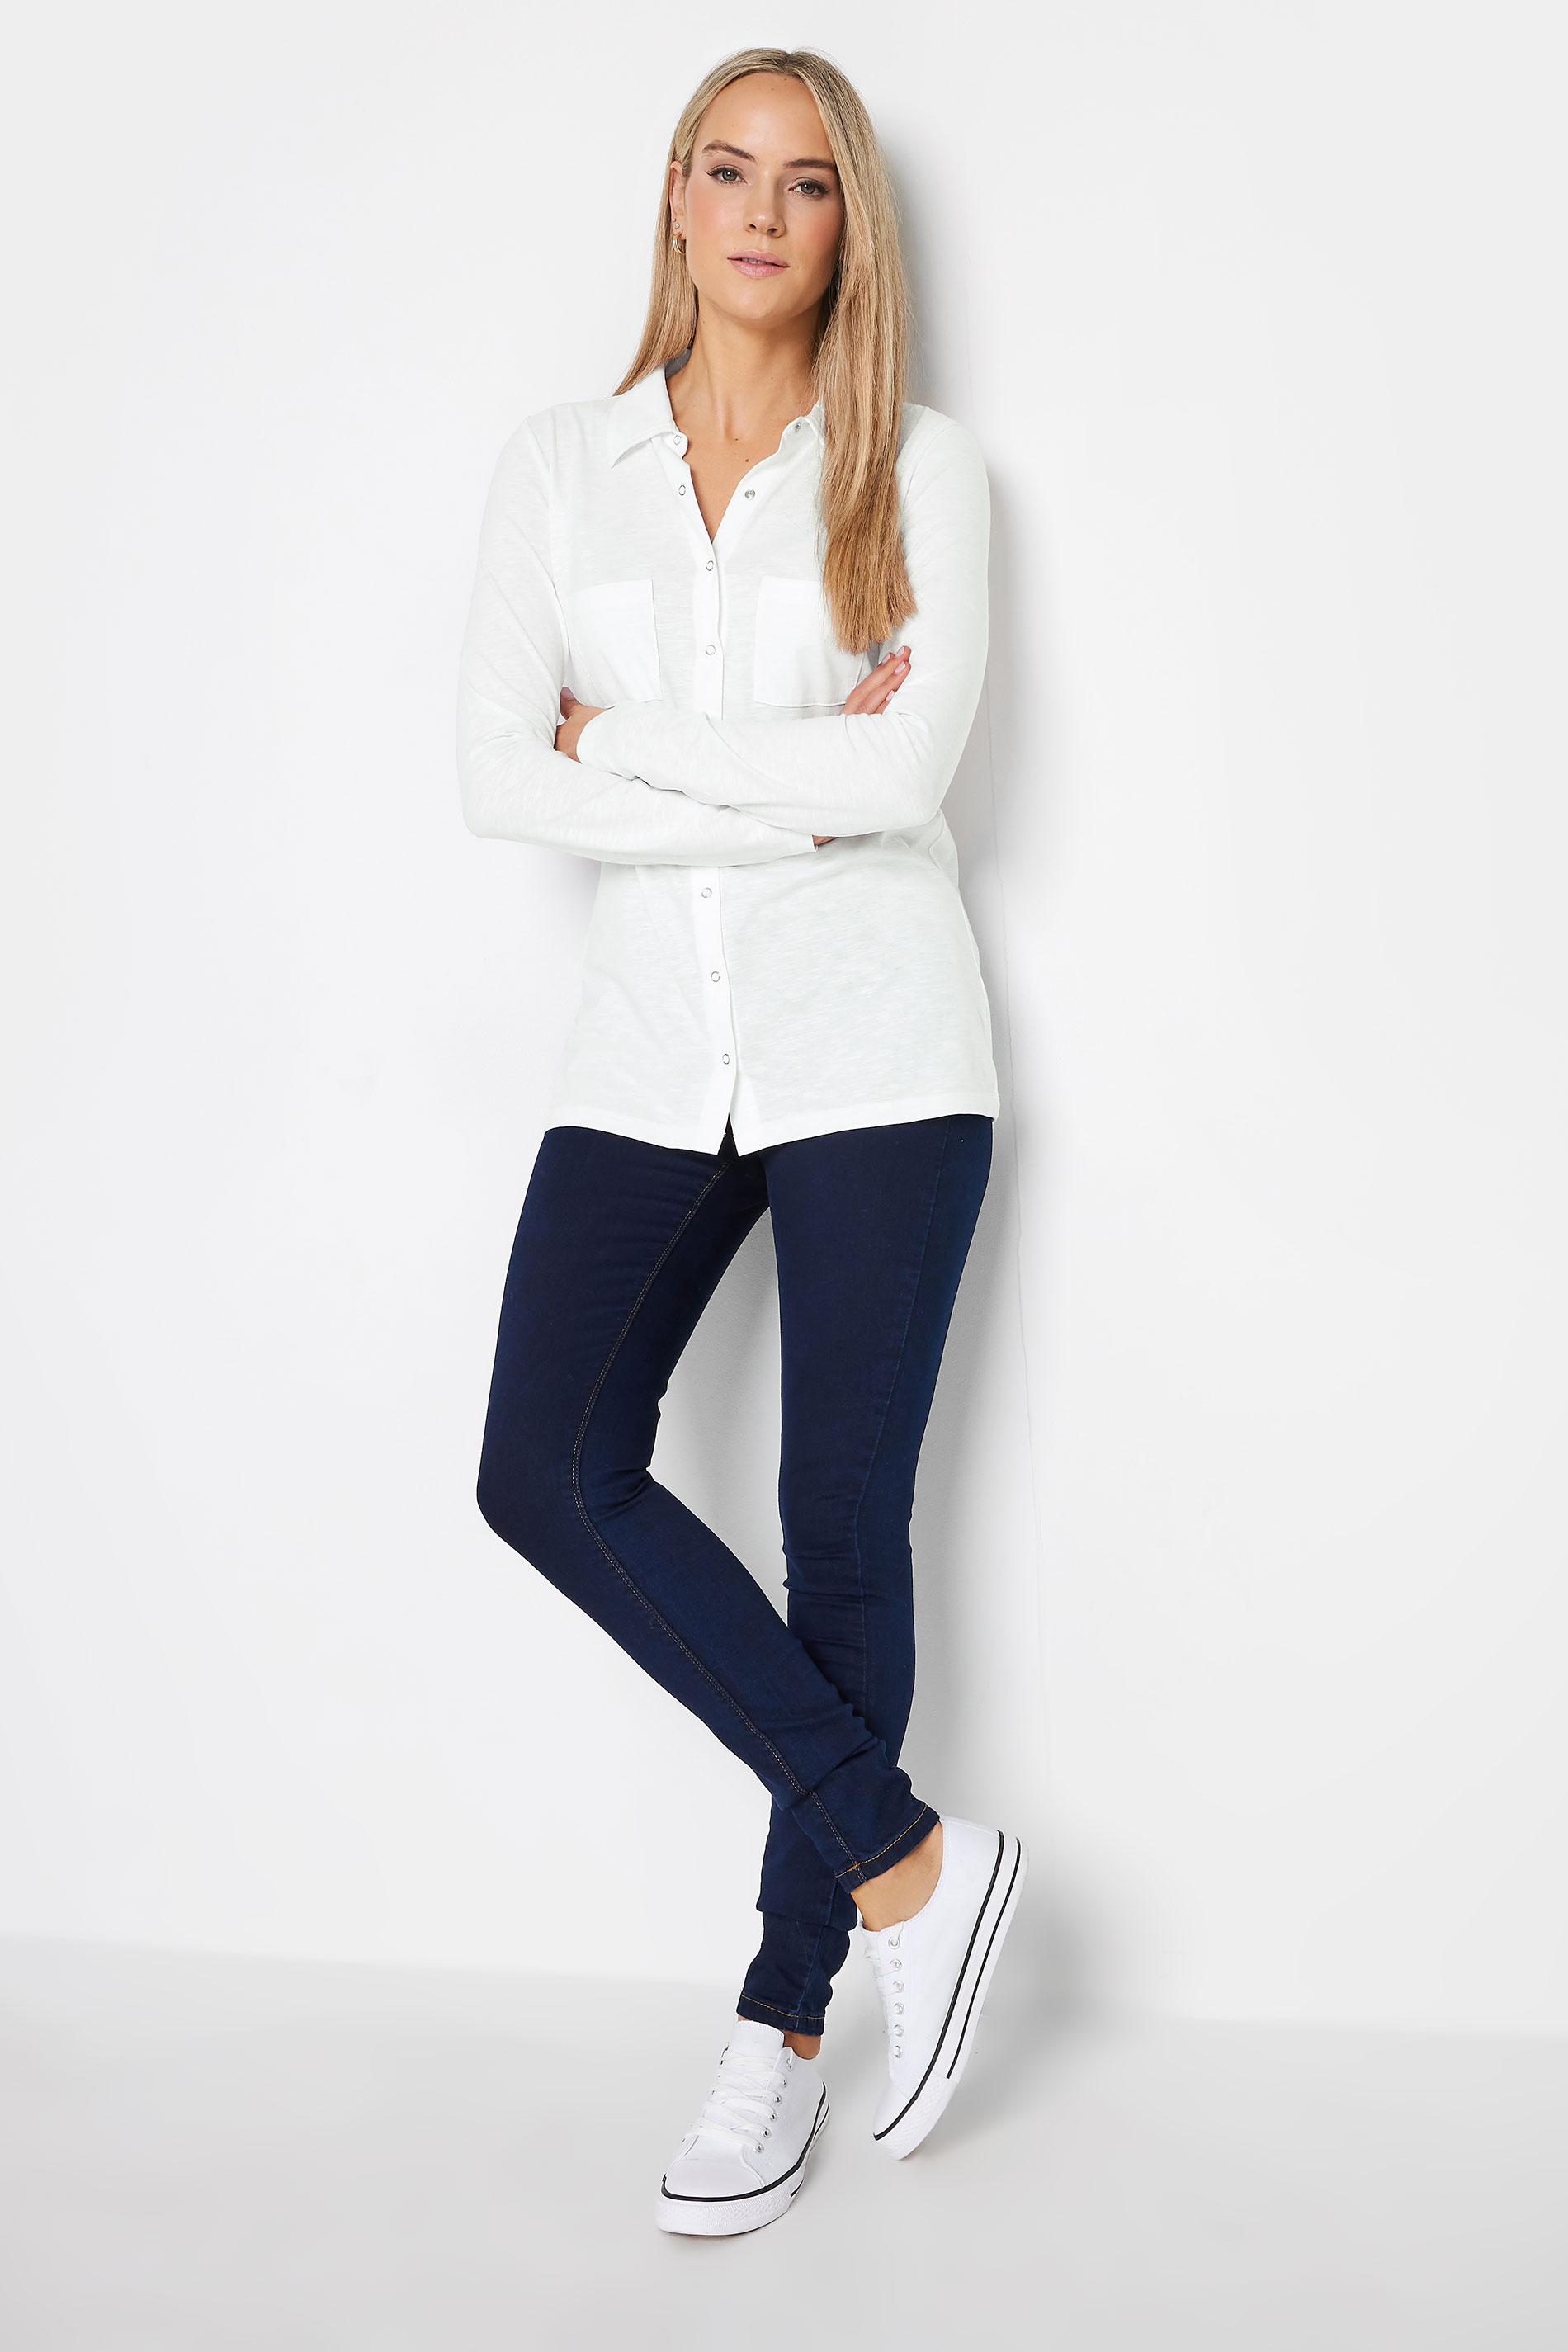 LTS Tall Women's White Cotton Jersey Shirt | Long Tall Sally 2